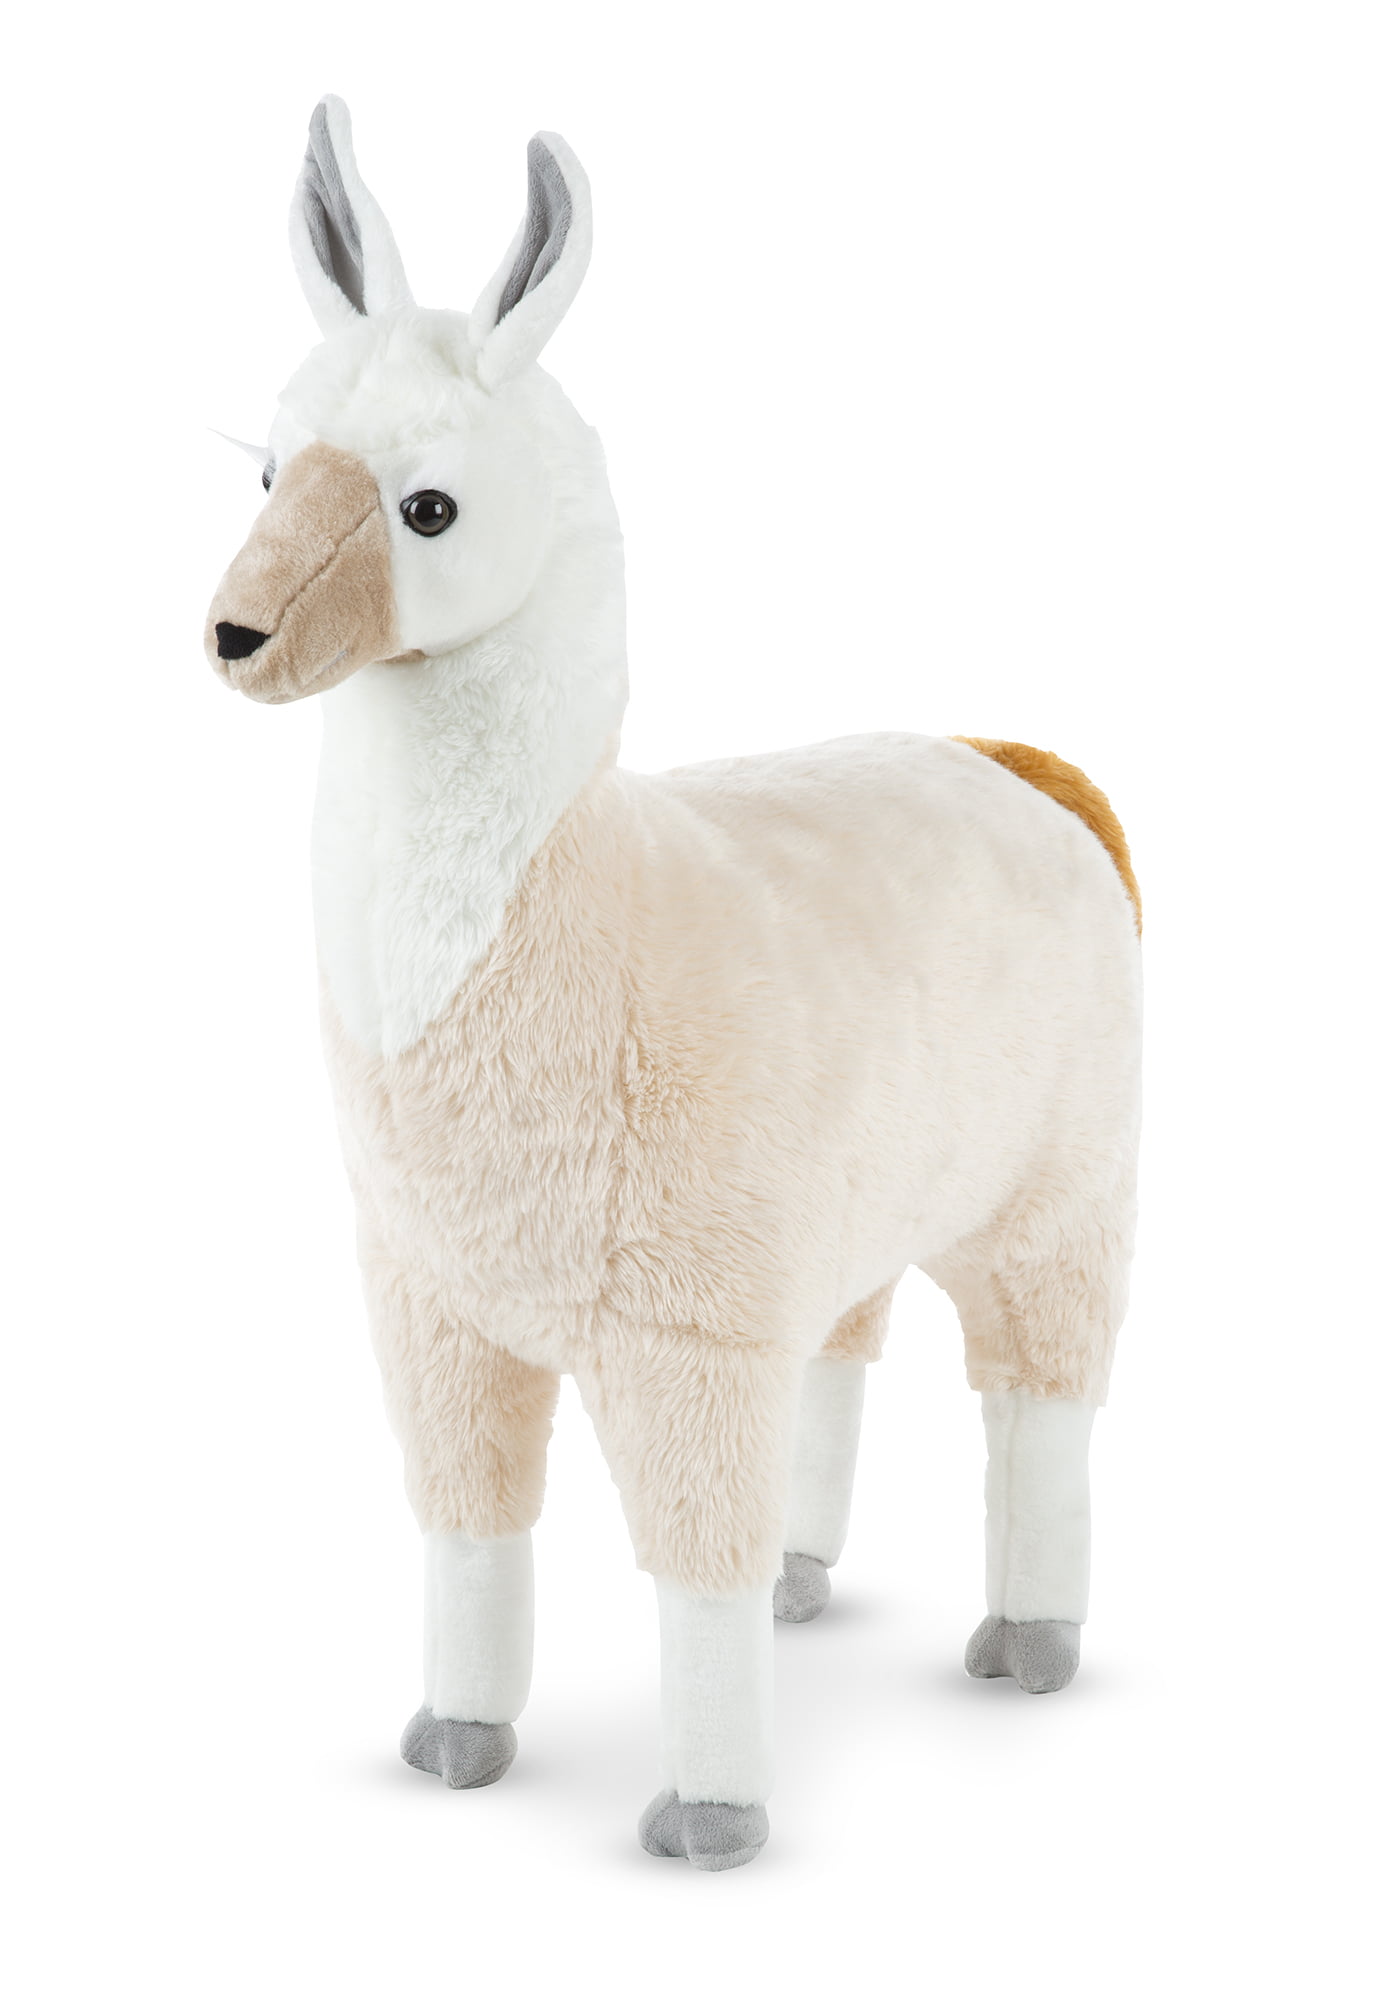 llama stuffed animal walmart